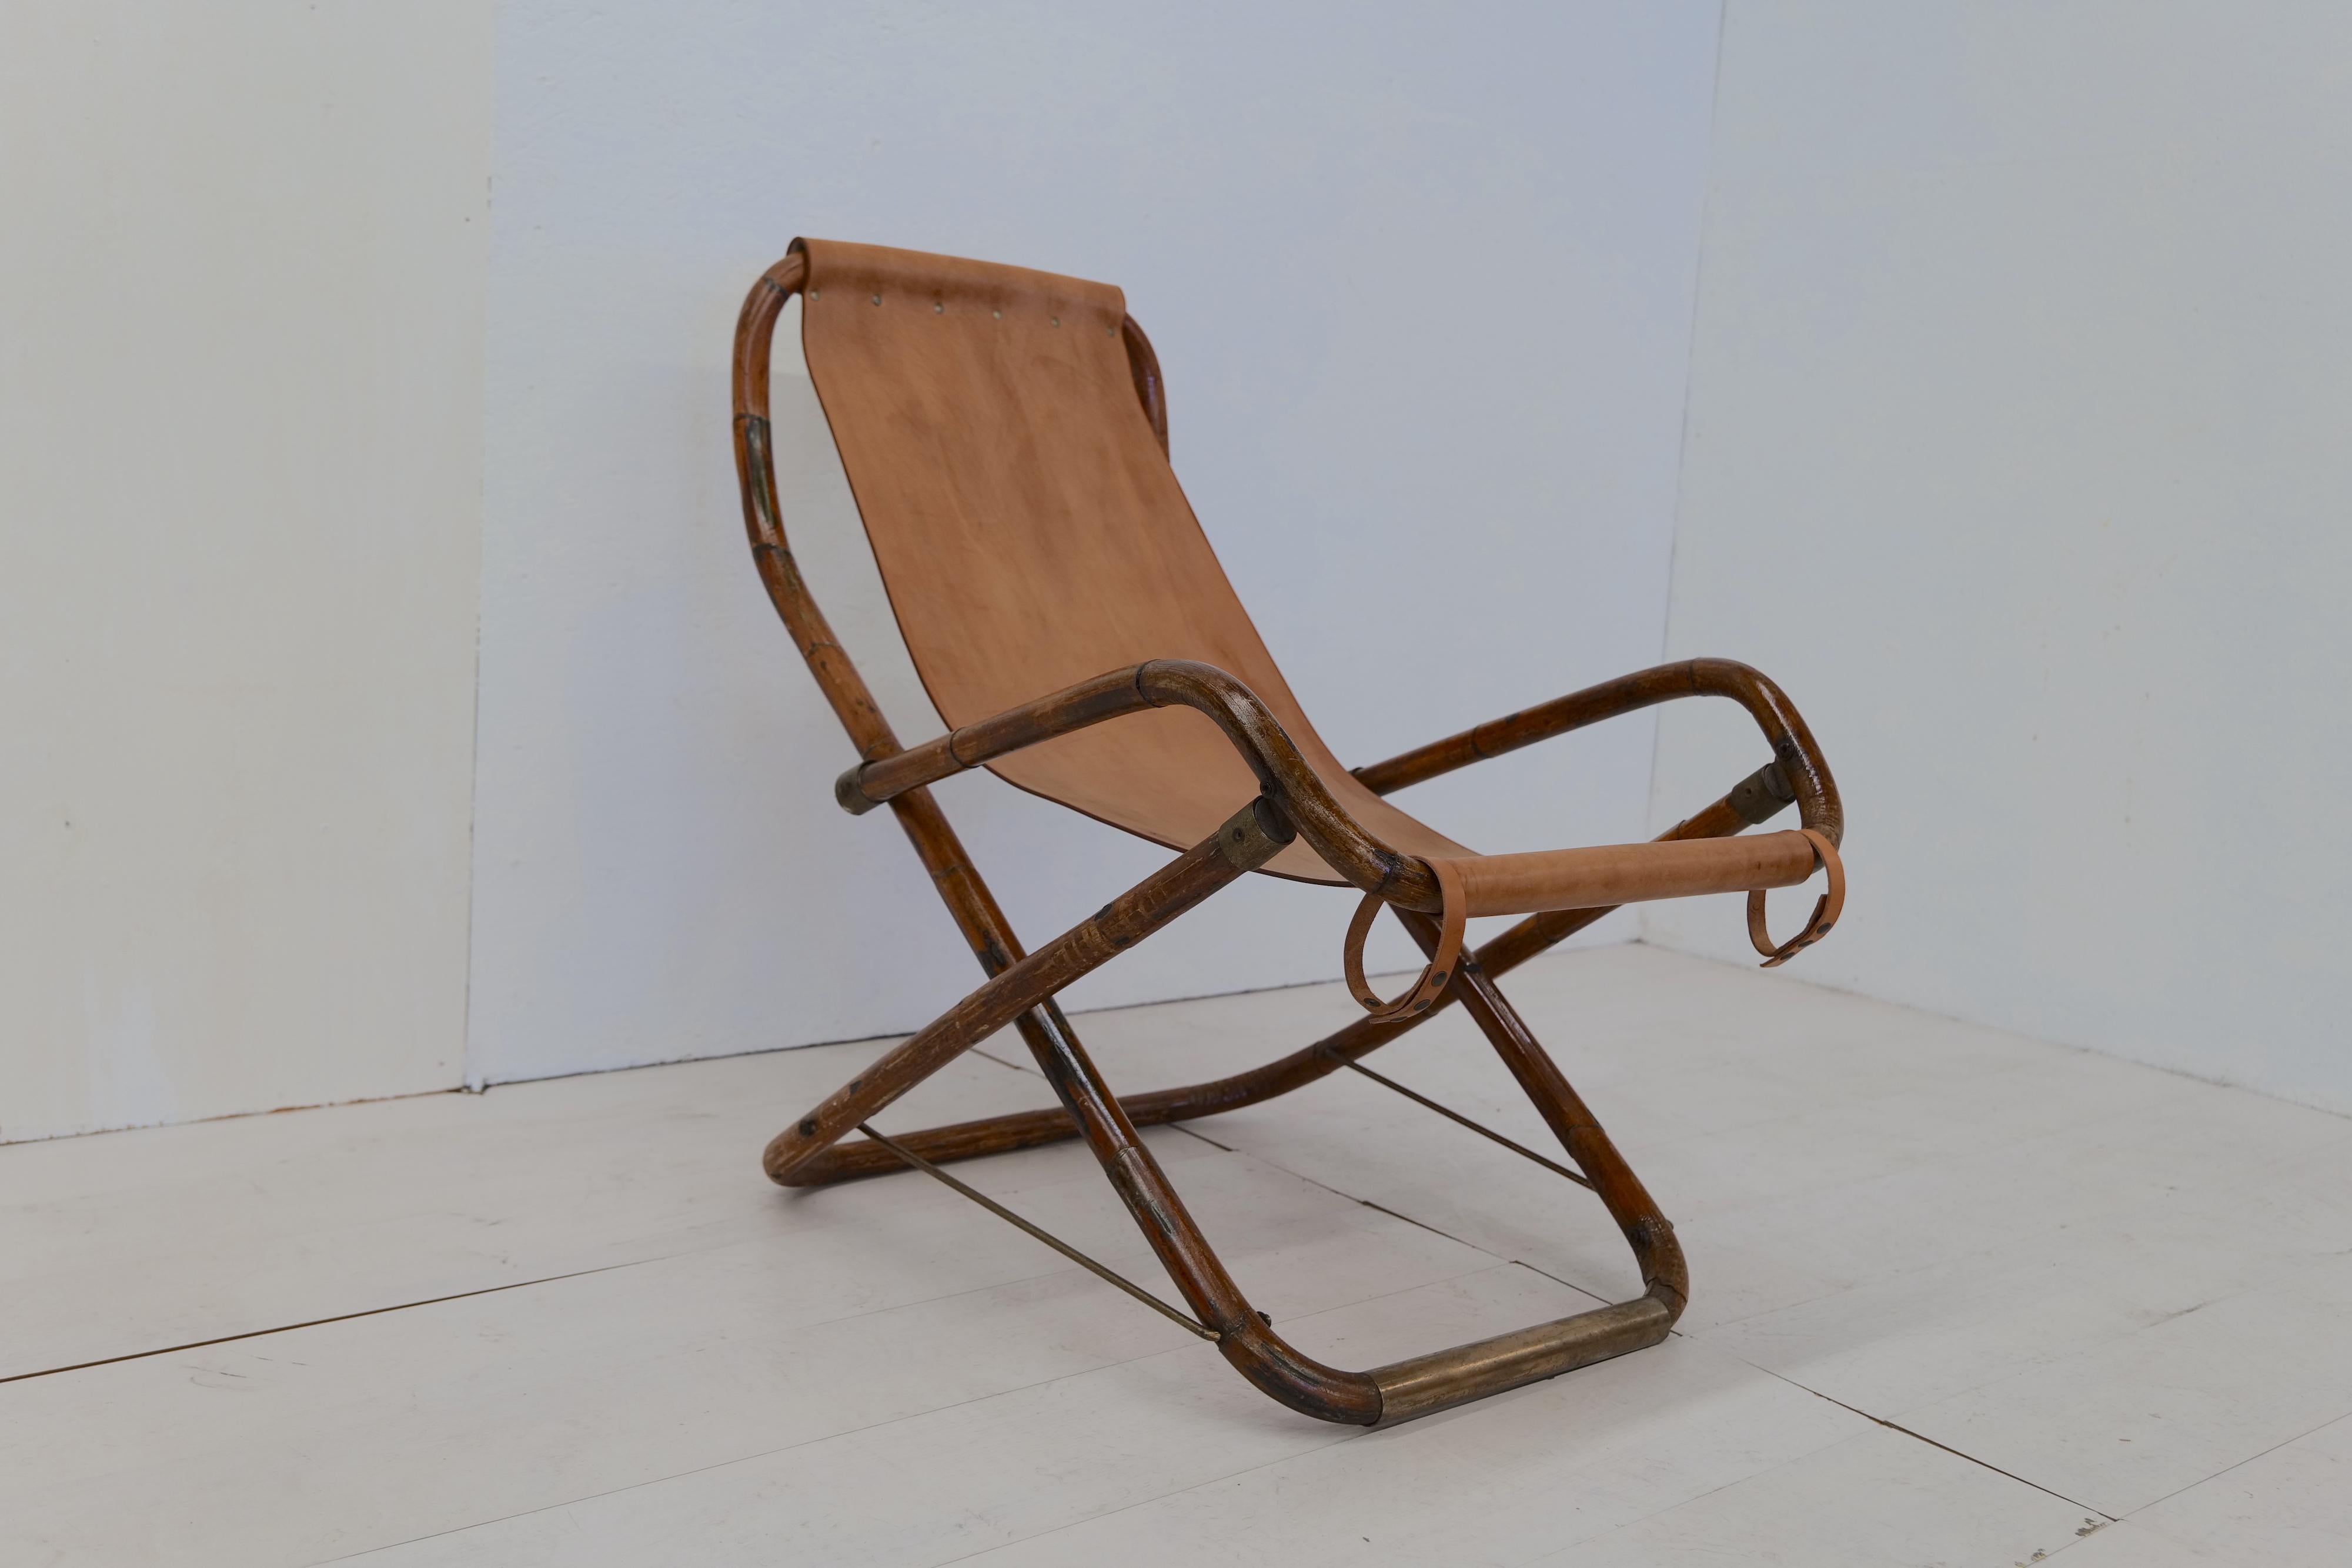 Le fauteuil à bascule italien vintage en cuir et bois des années 1960 est un meuble classique fabriqué en Italie. Il se caractérise par un cadre en bois robuste aux courbes et détails élégants, associé à une assise et un dossier confortables revêtus